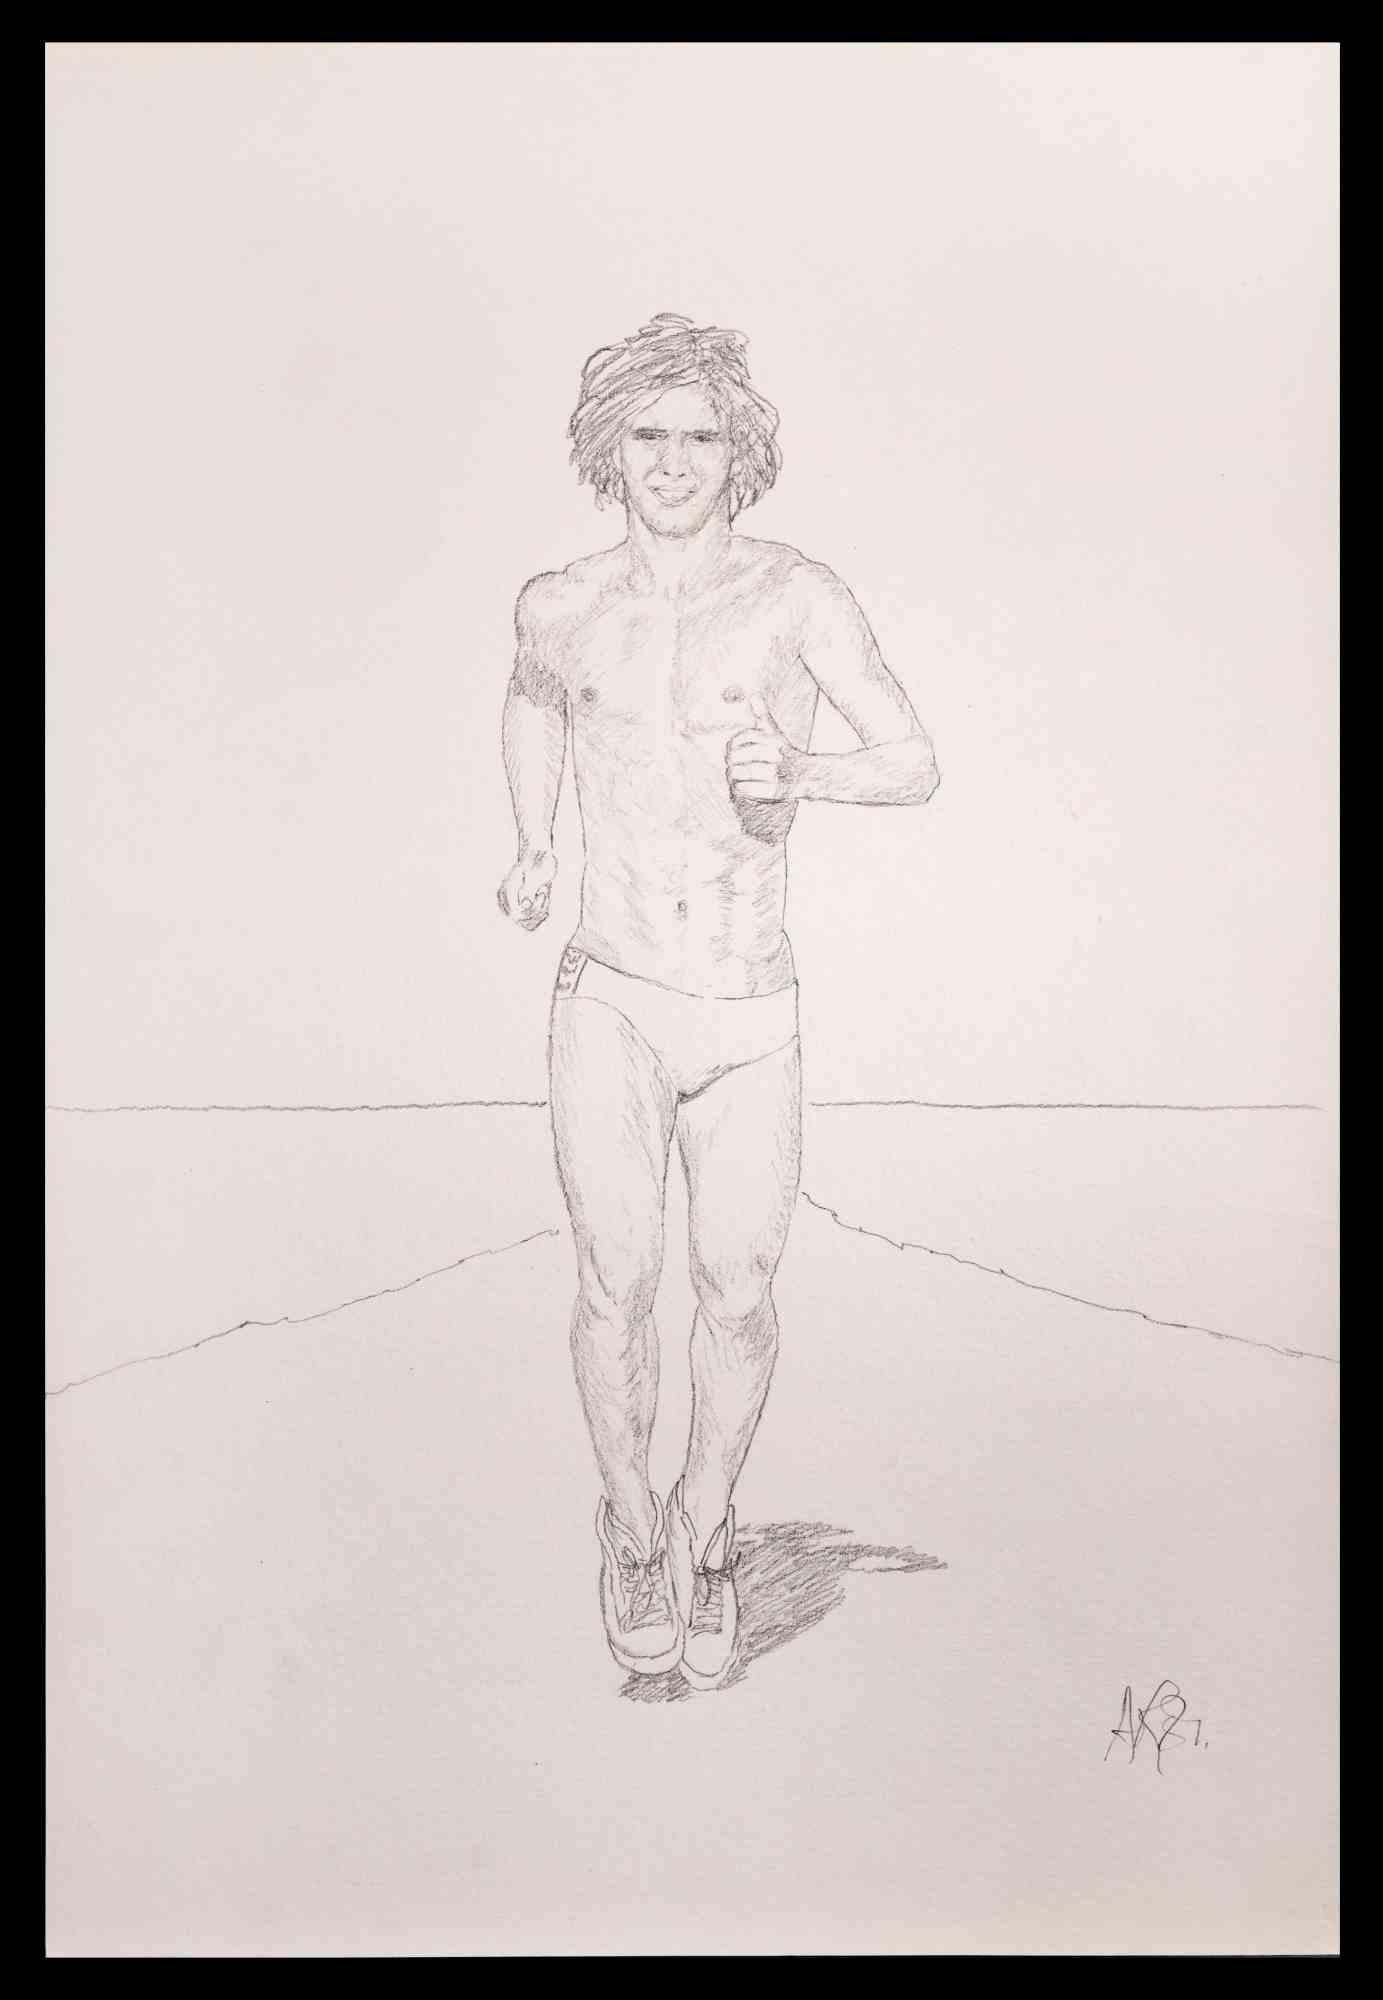 The Running Man ist eine Originalzeichnung mit Bleistift von Anthony Roaland aus dem Jahr 1981. Handsigniert und datiert vom Künstler am unteren rechten Rand. 

Das Kunstwerk stellt einen frischen und schönen männlichen Akt dar. Die Landschaft